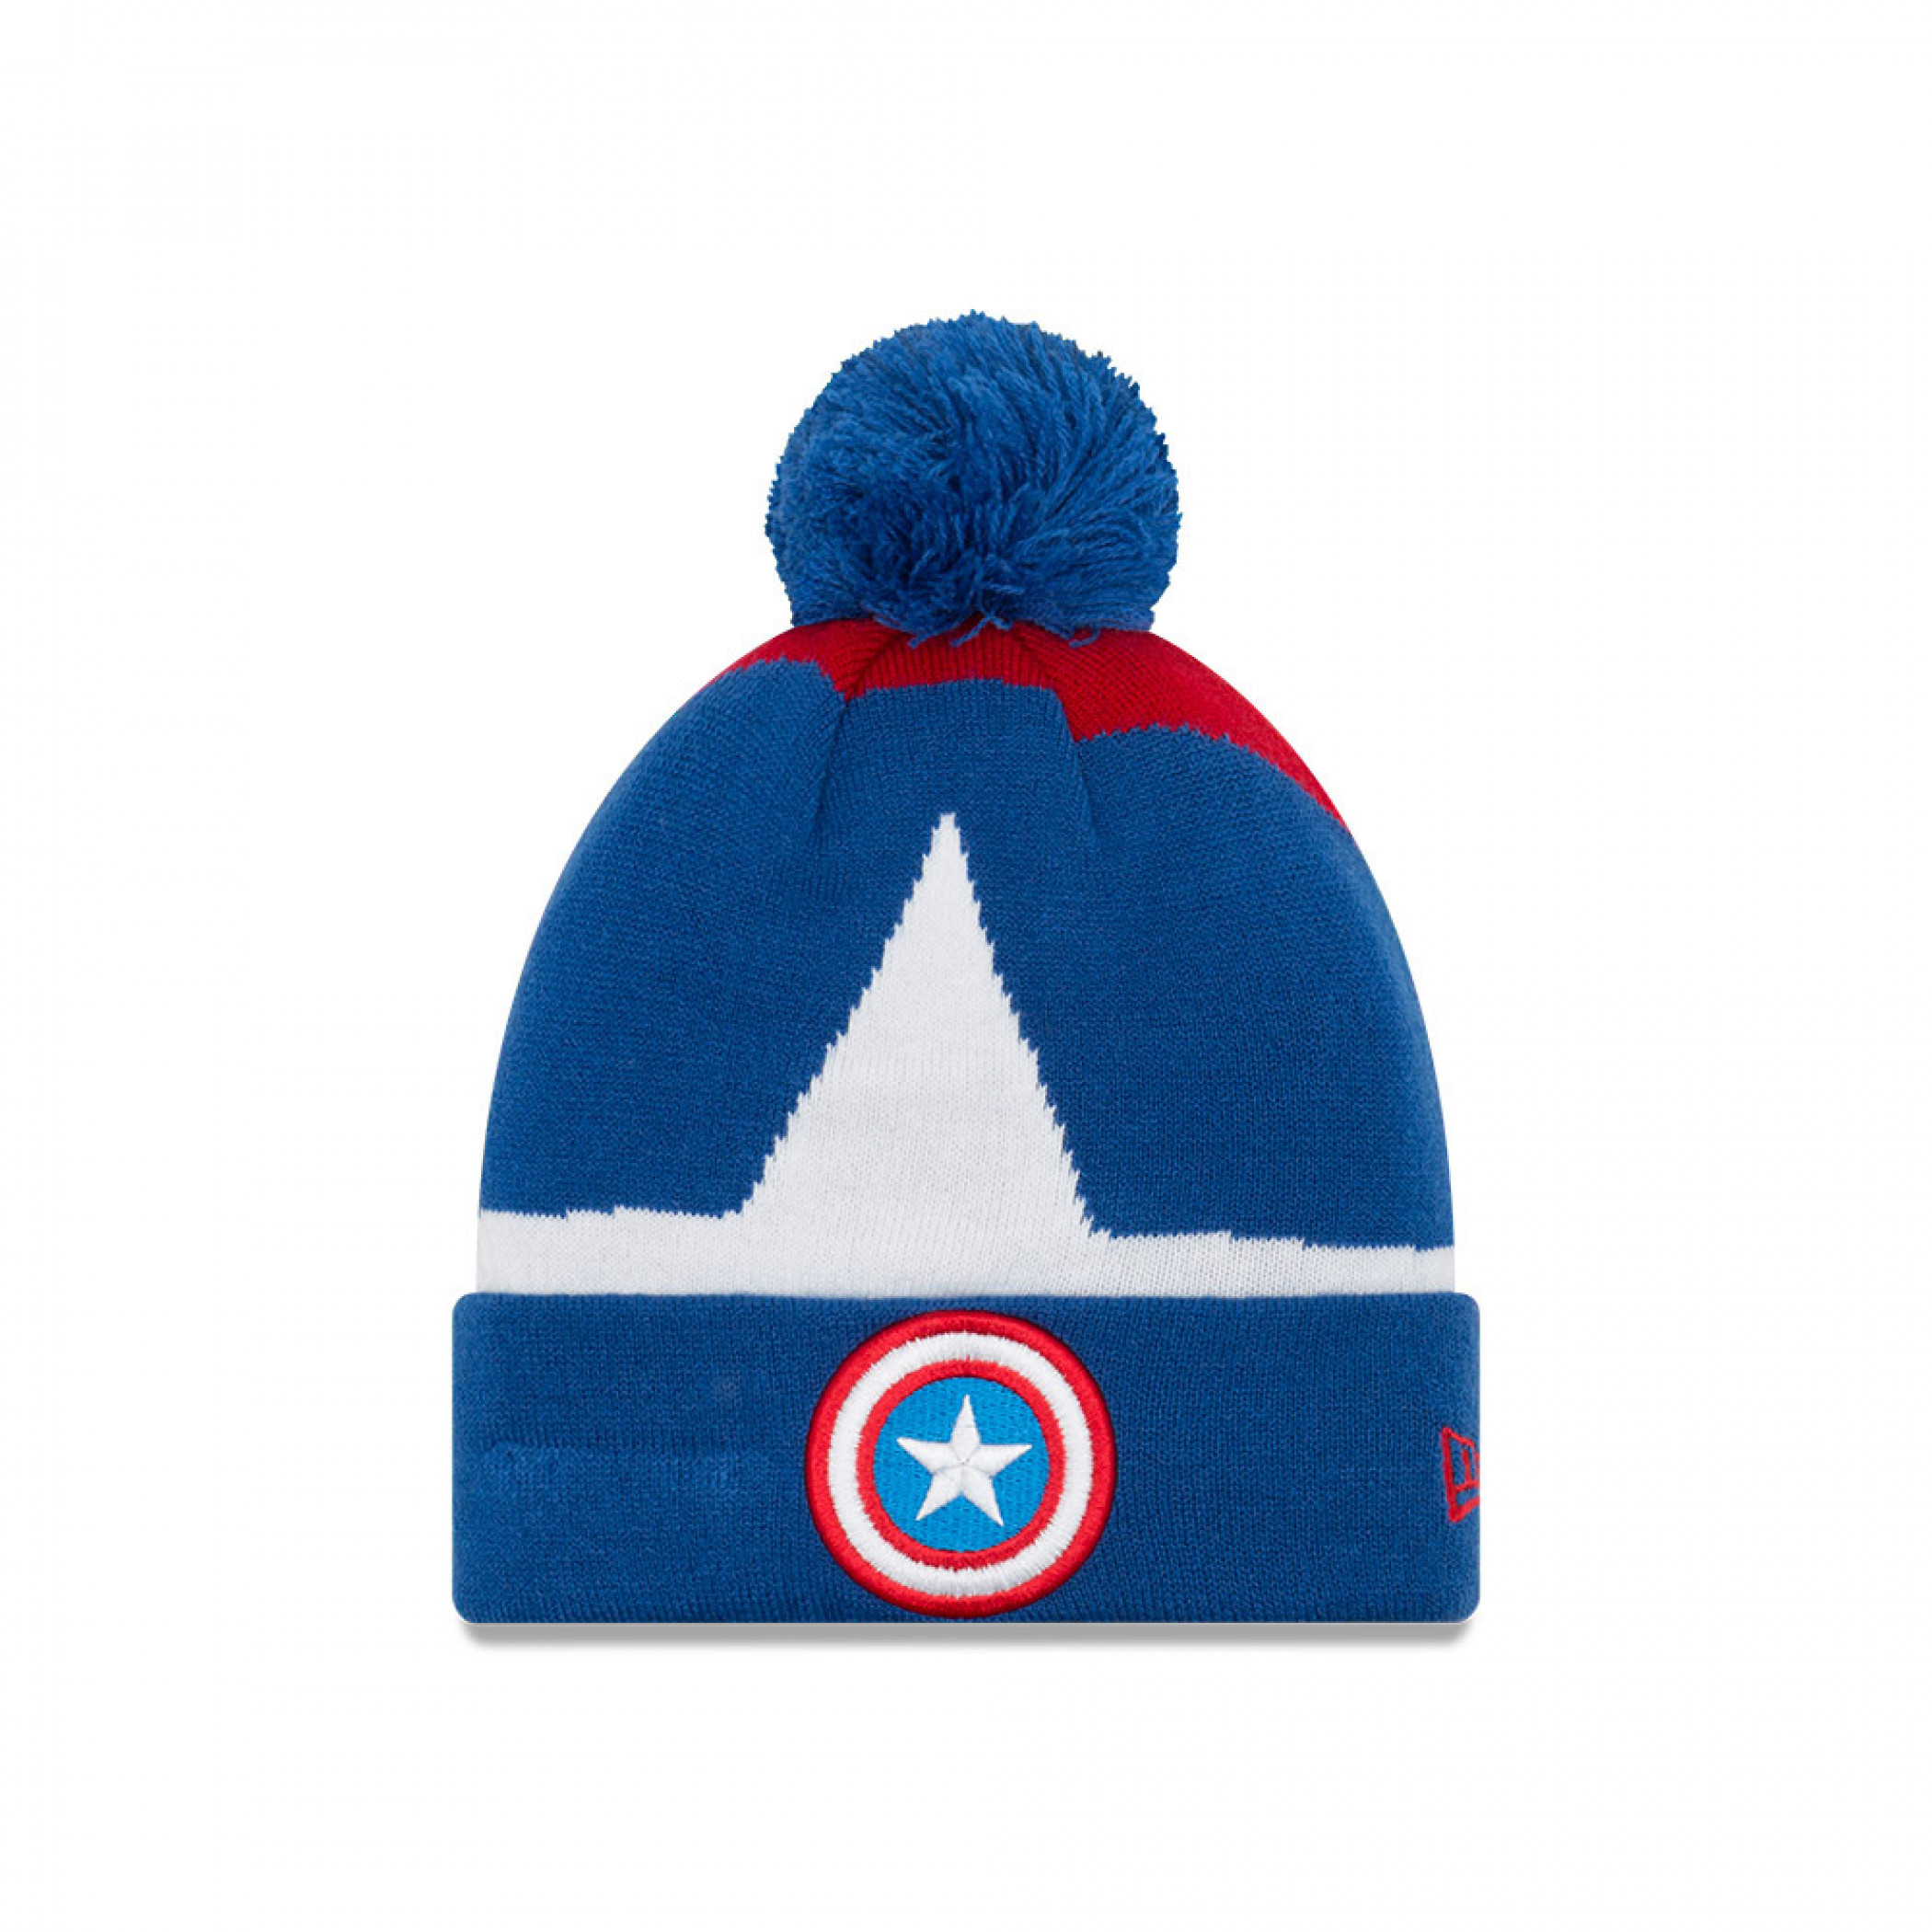 Captain America Logo Kids Cuff Knit New Era Pom Beanie